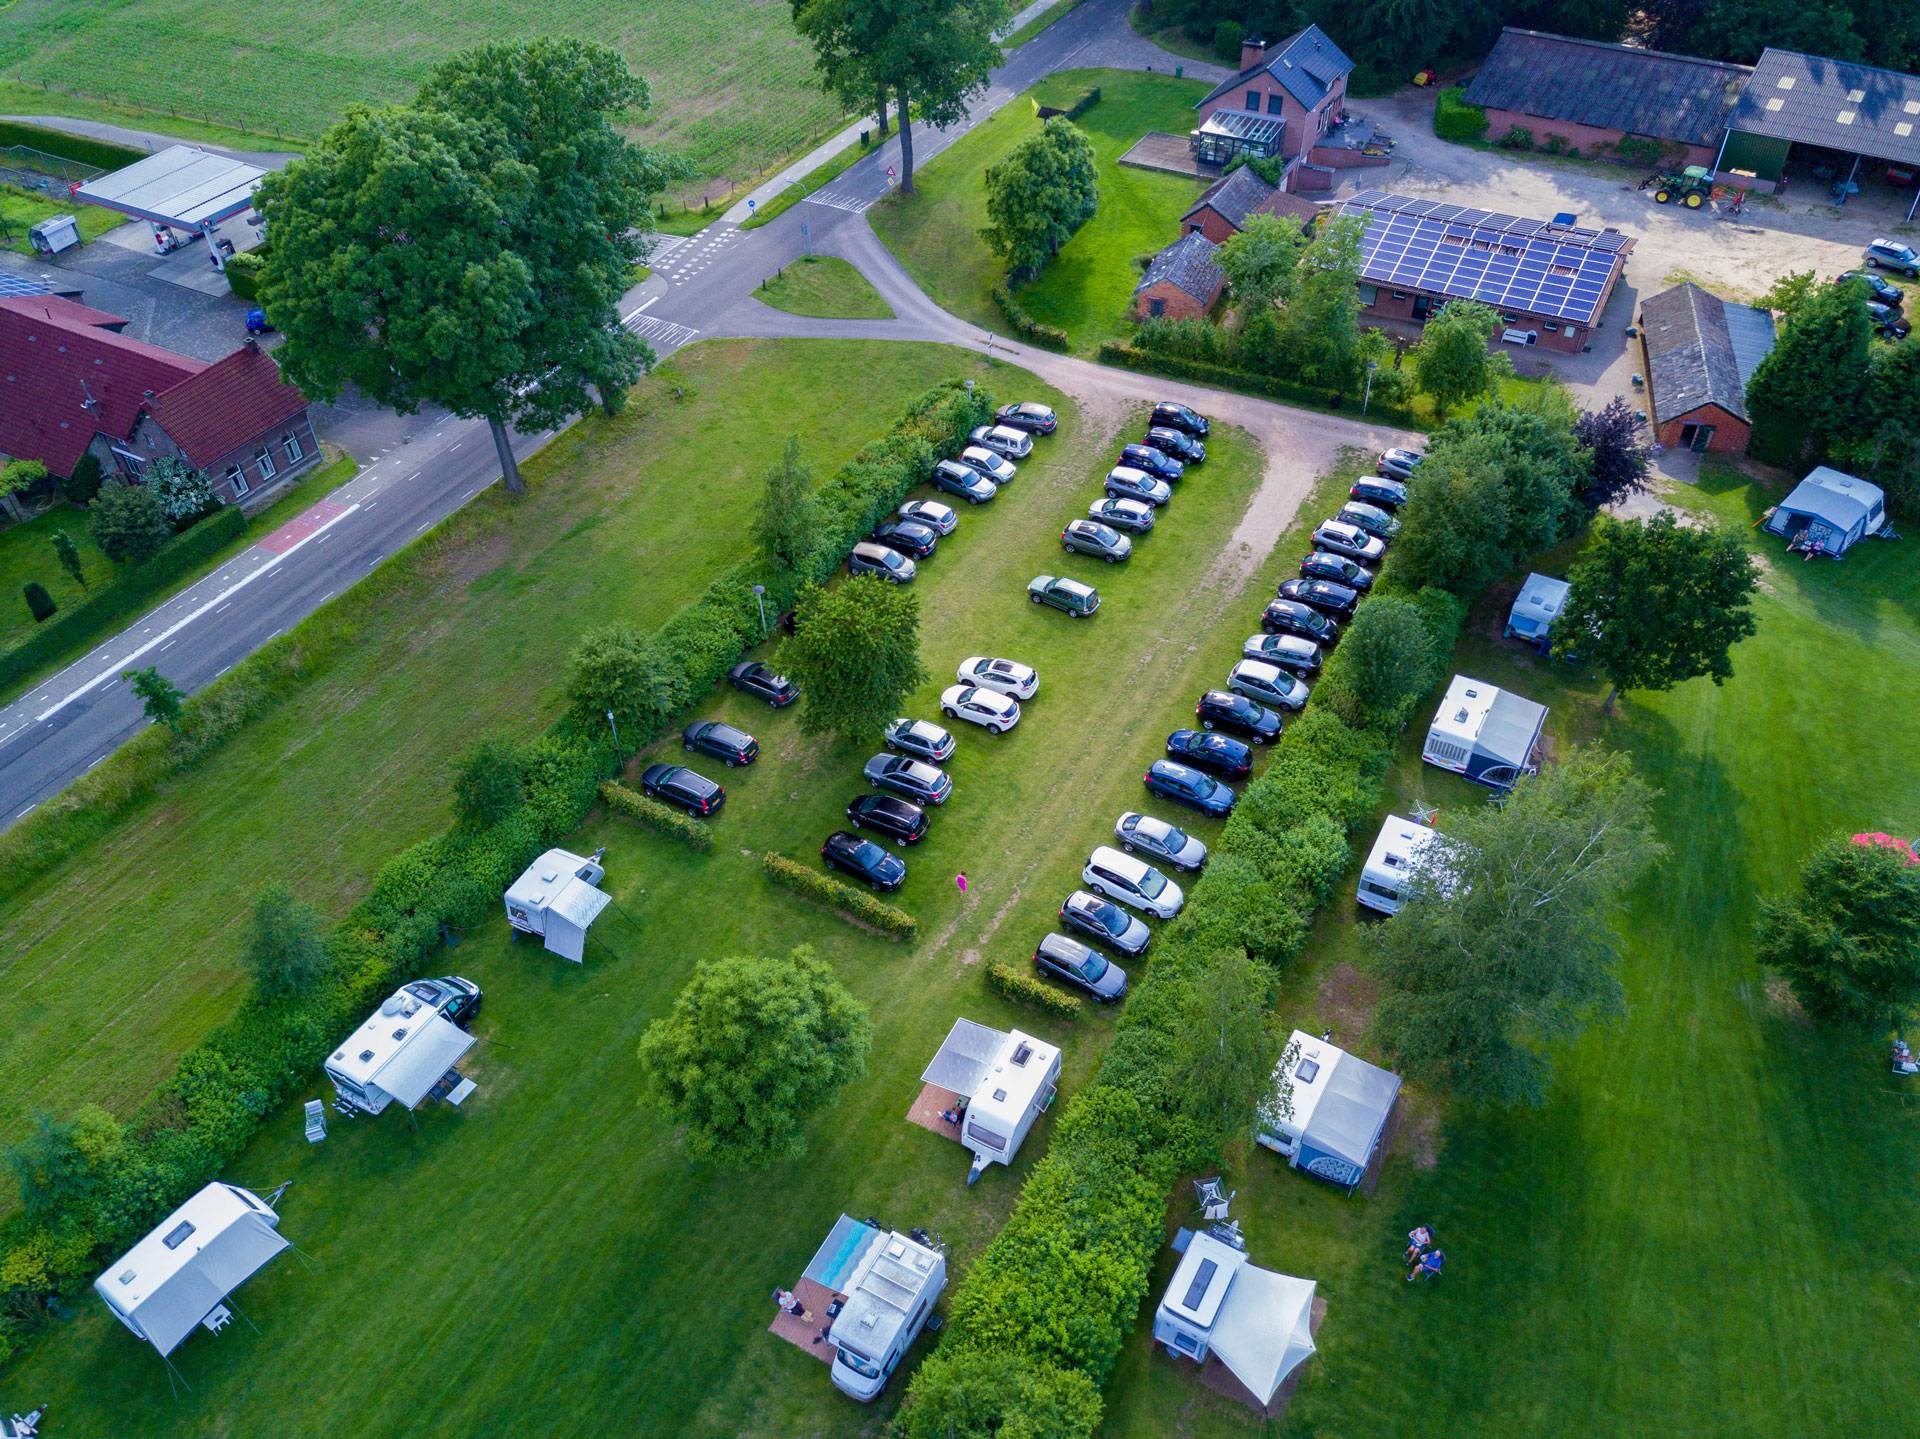 2019-06-18-Camping-Aan-De-Grens-Dronebeelden-22